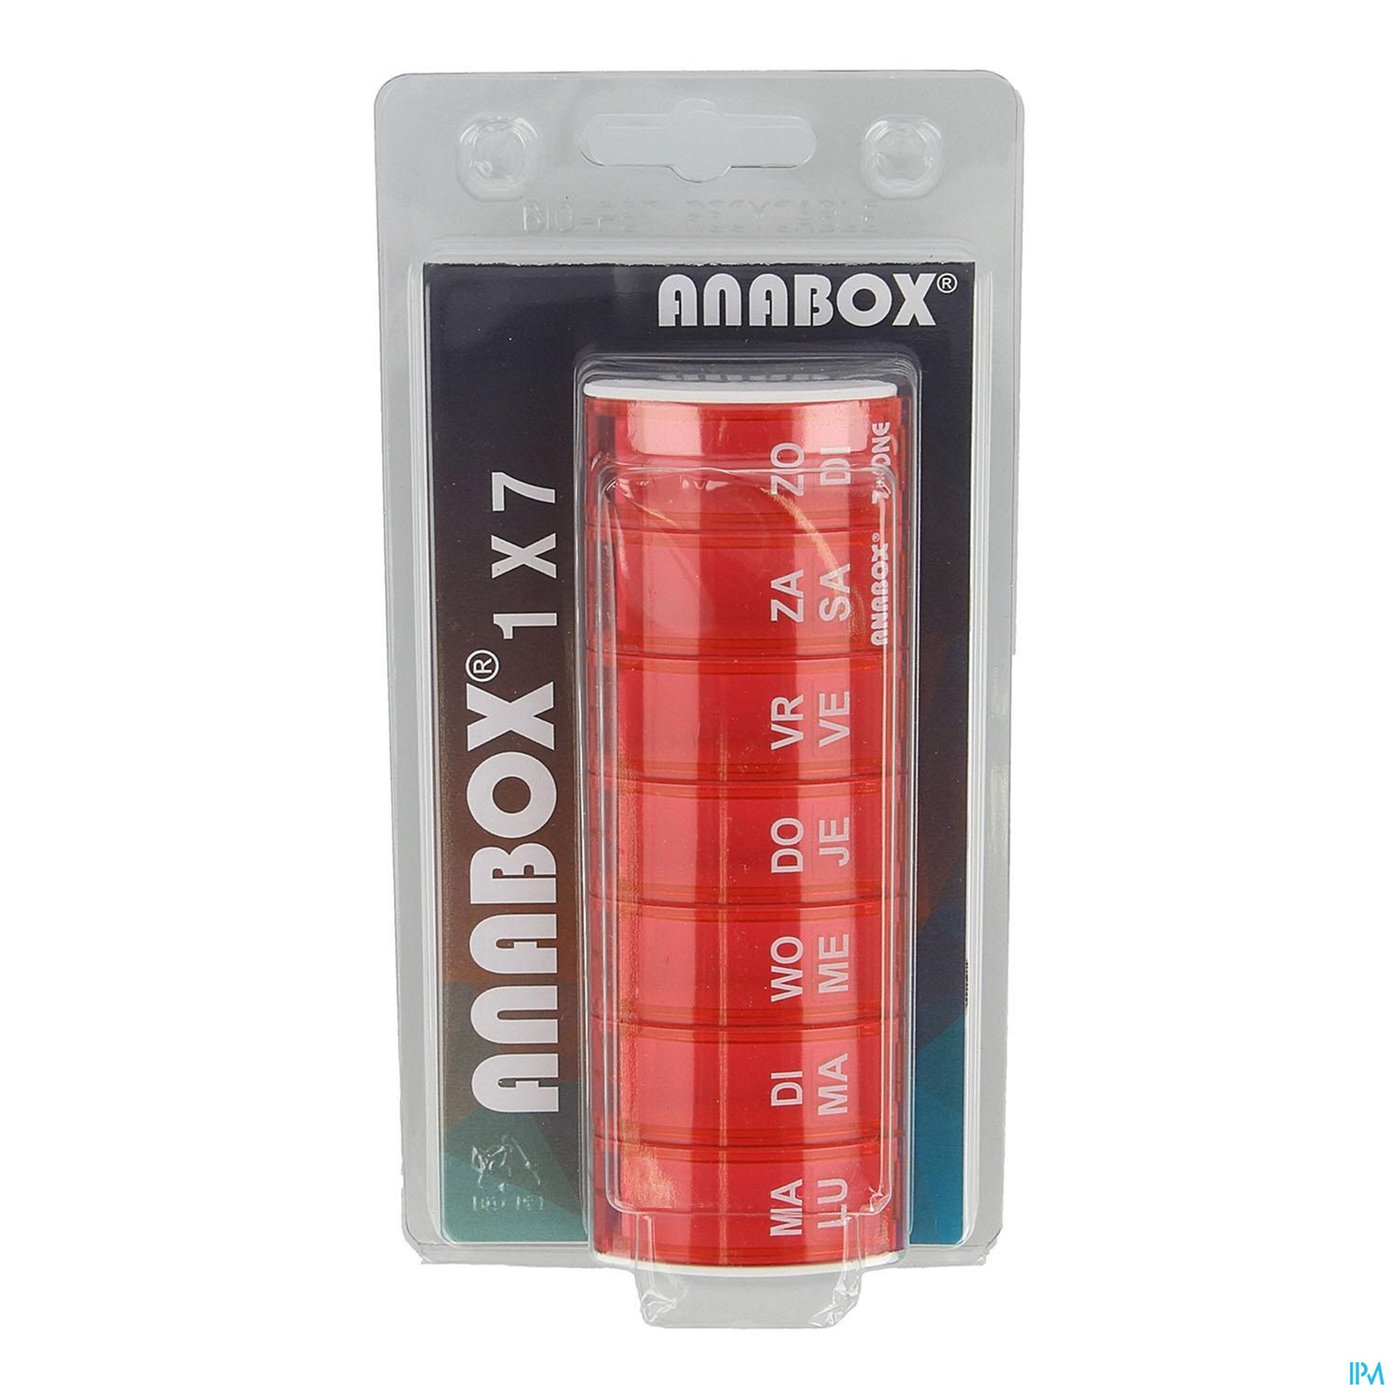 Anabox Pildoos Week Roze packshot